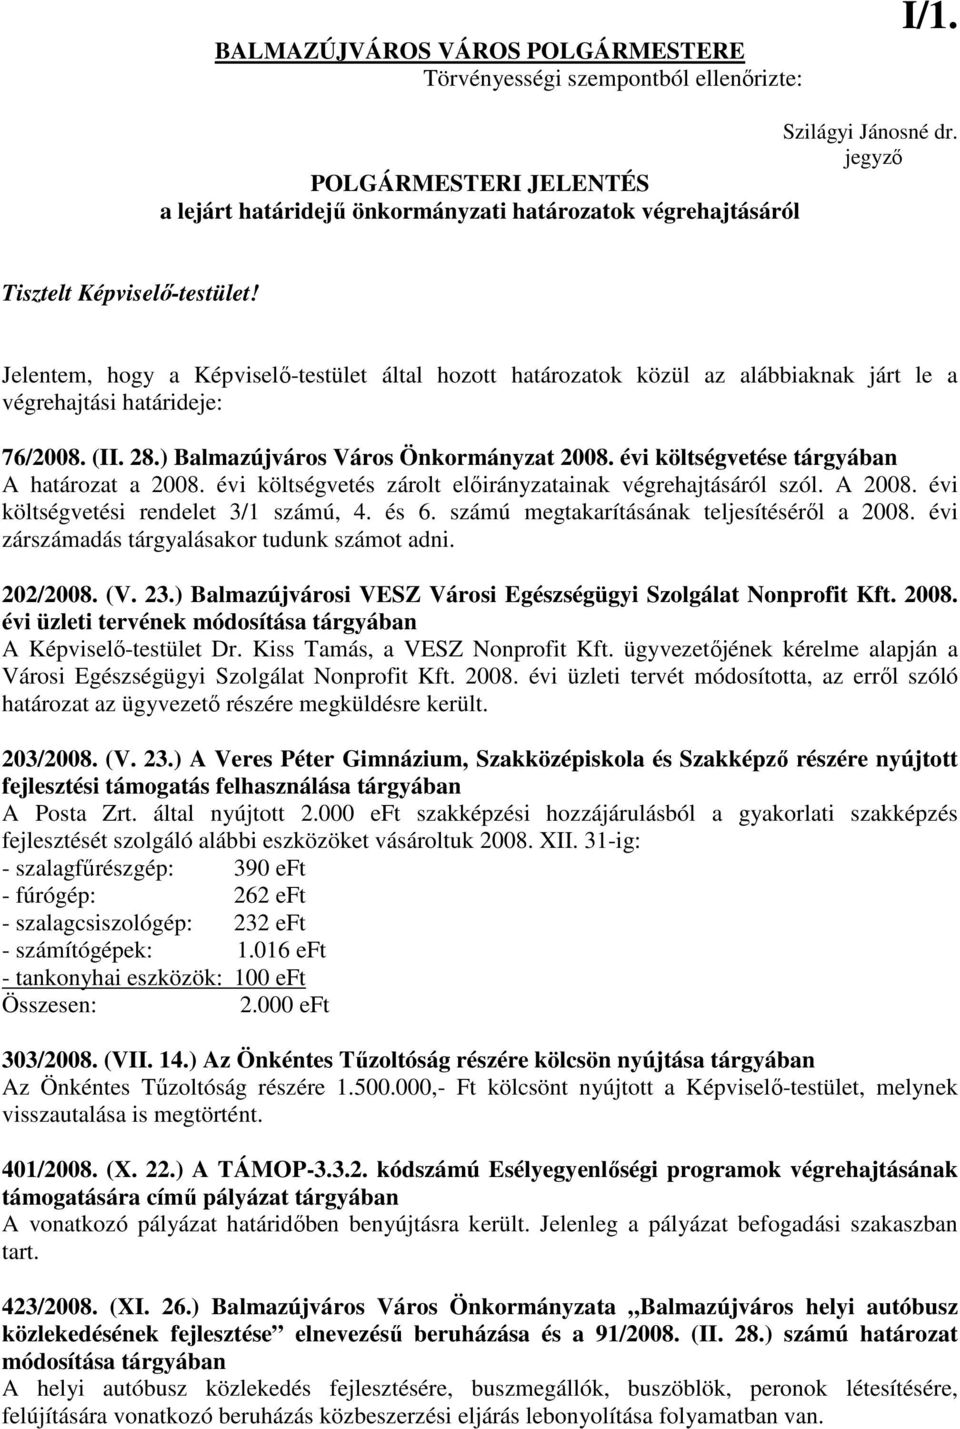 Jelentem, hogy a Képviselı-testület által hozott határozatok közül az alábbiaknak járt le a végrehajtási határideje: 76/2008. (II. 28.) Balmazújváros Város Önkormányzat 2008.